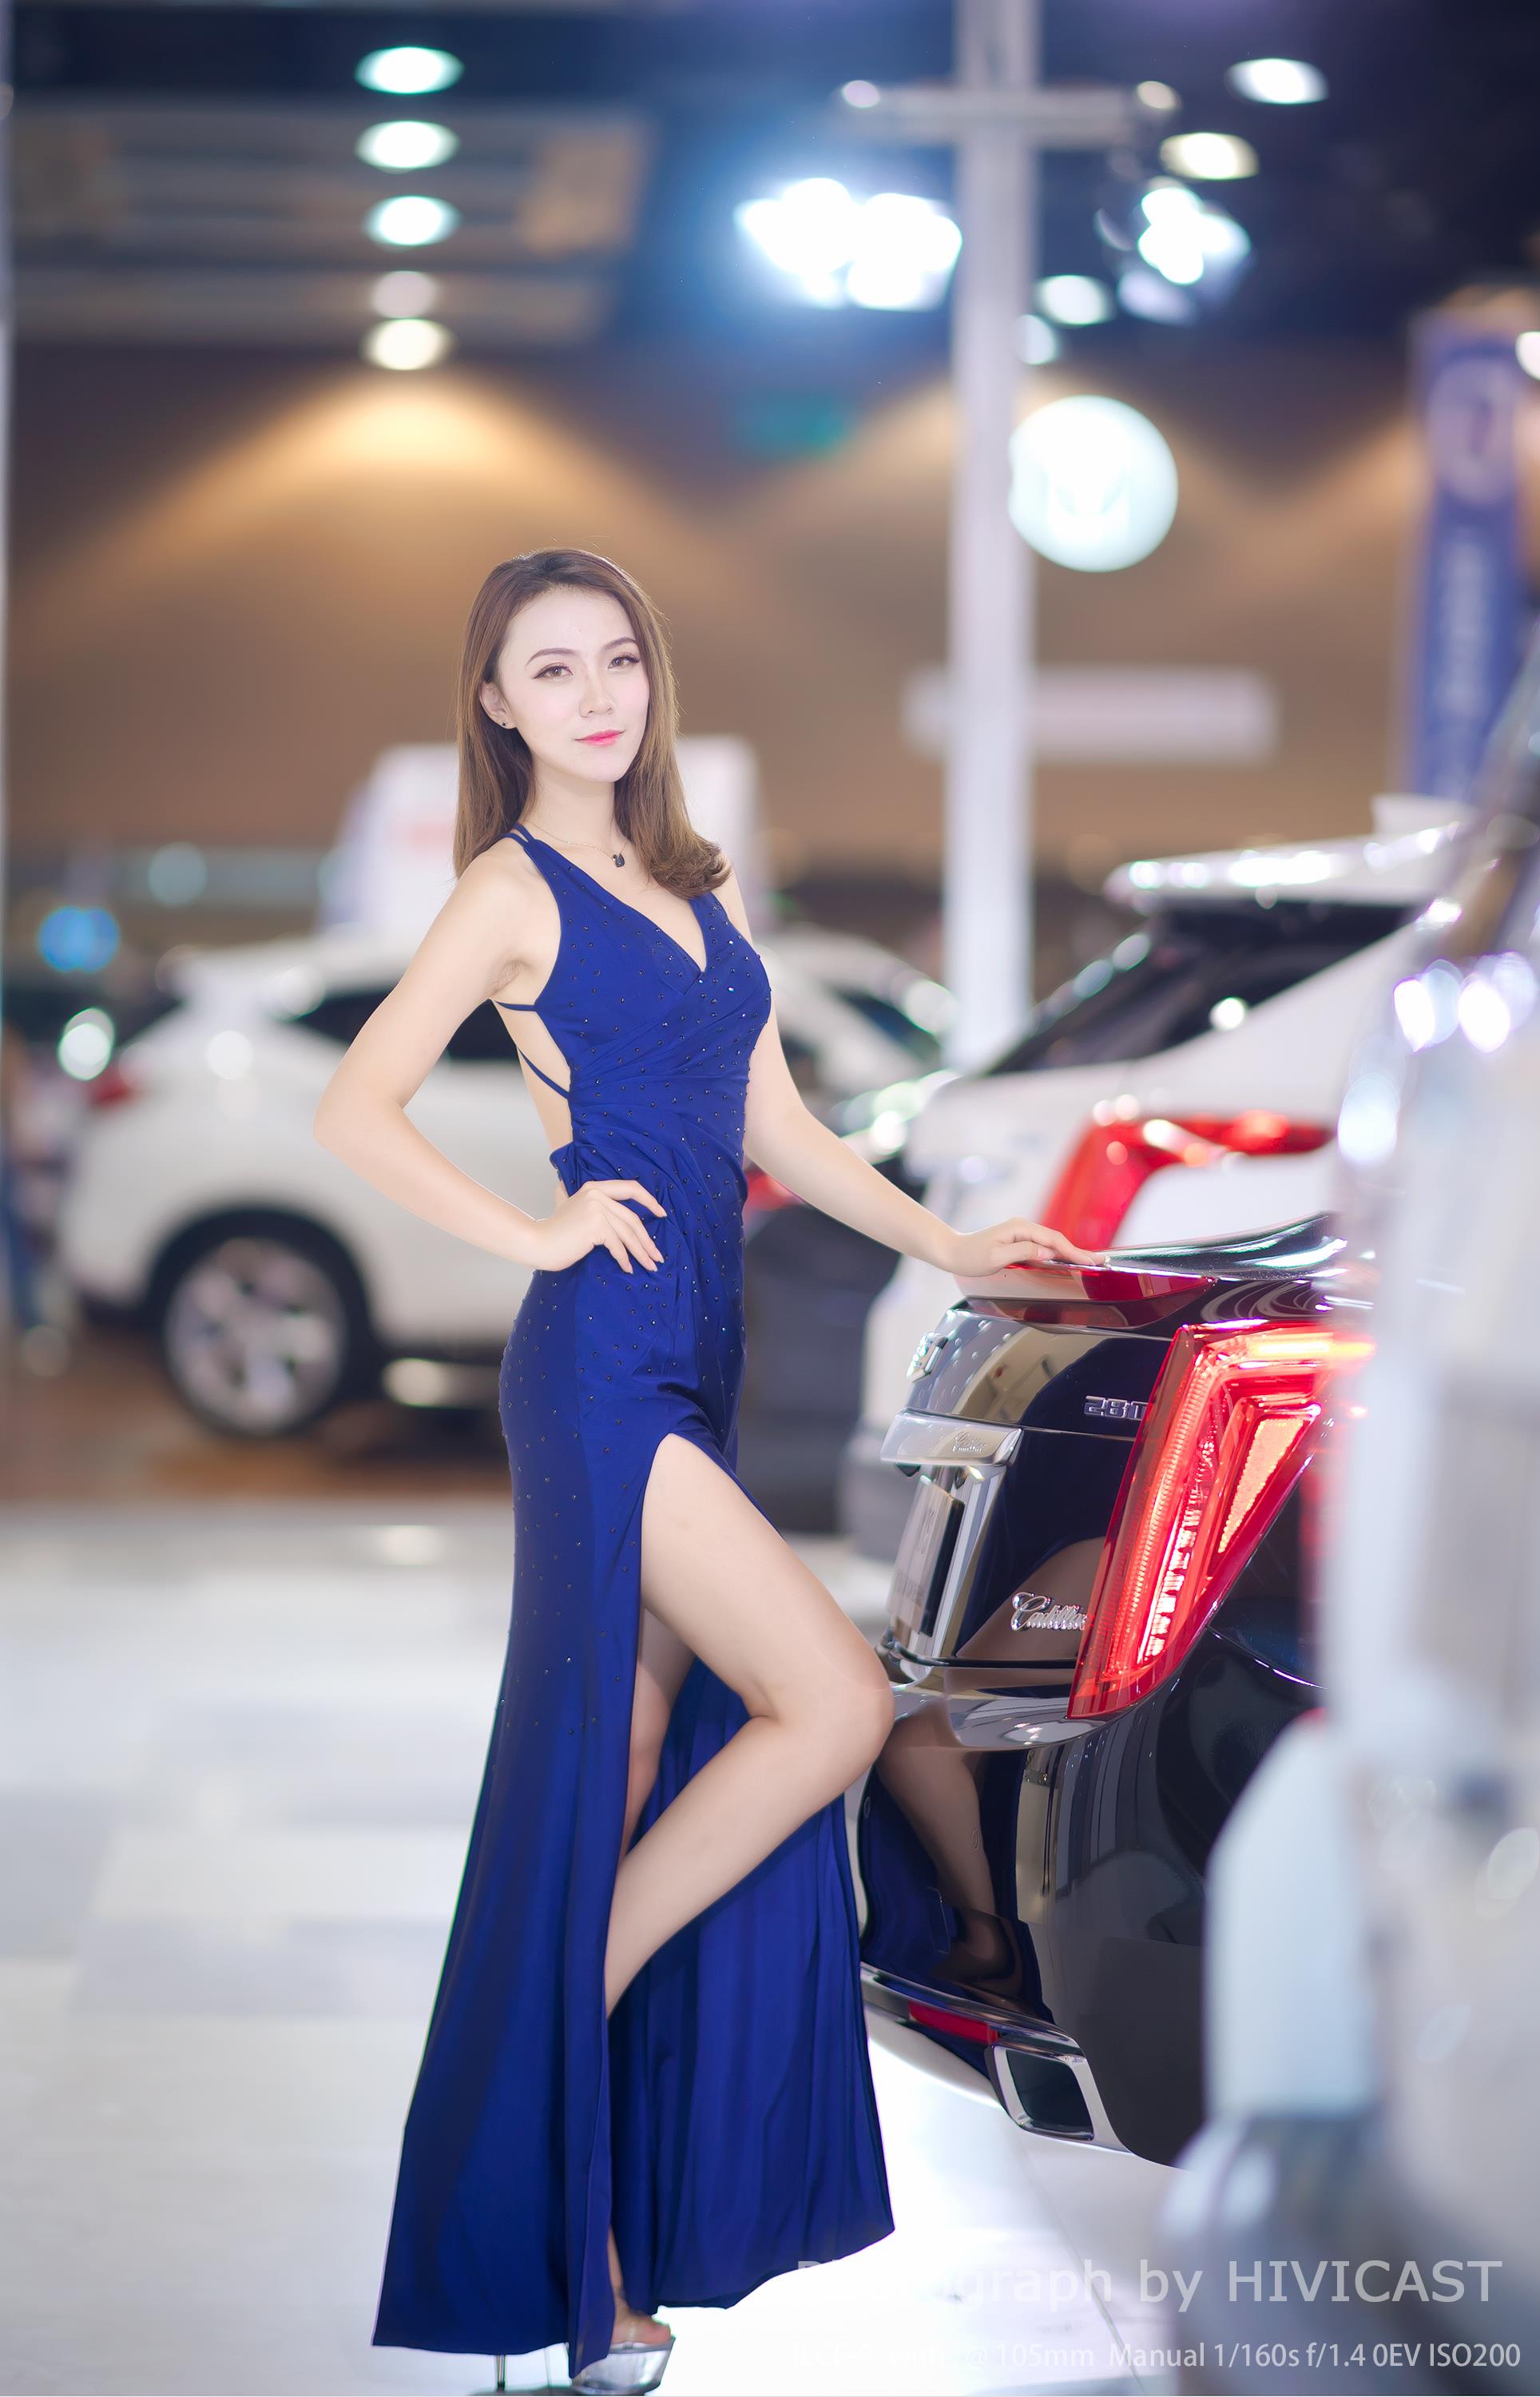 2017沈阳车展 北京现代汽车展台 美女车模蓝色高叉裸背连身裙写真  第3张